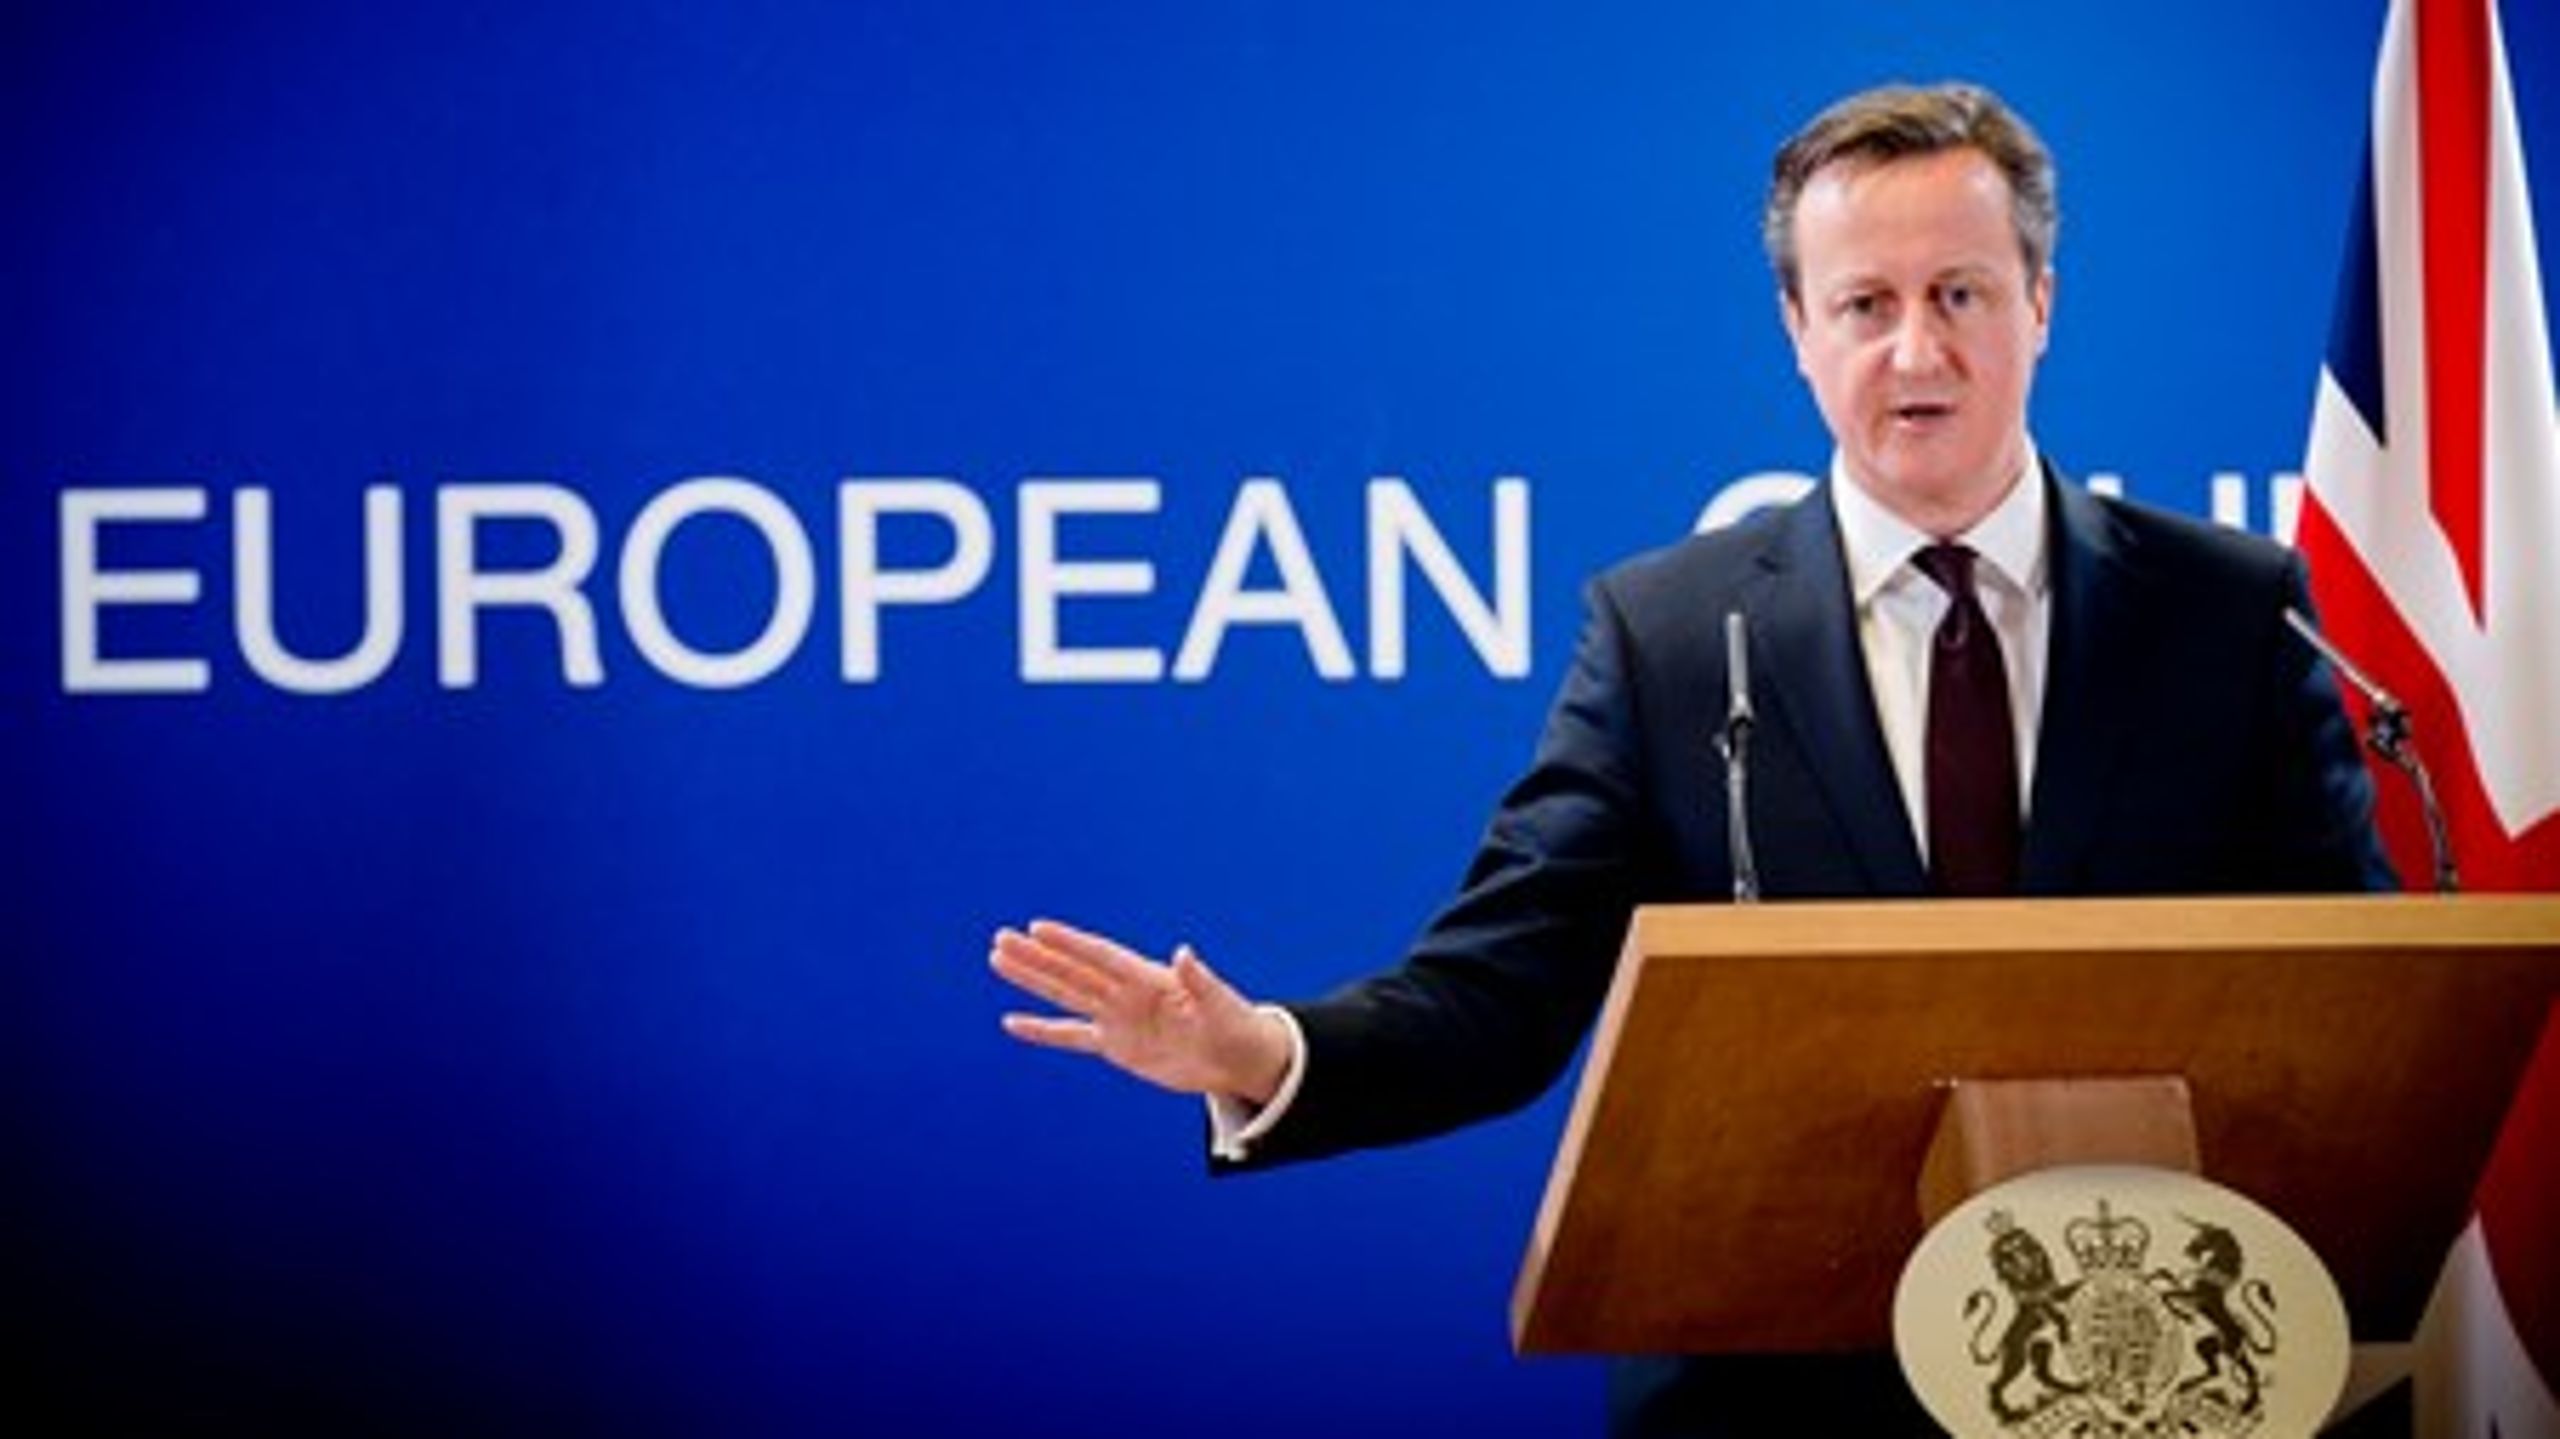 David Cameron, der for nylig opnåede genvalg til posten som Storbritanniens premierminister, gik til valg på at give briterne en folkeafstemning om landets medlemskab af EU senest i 2017.